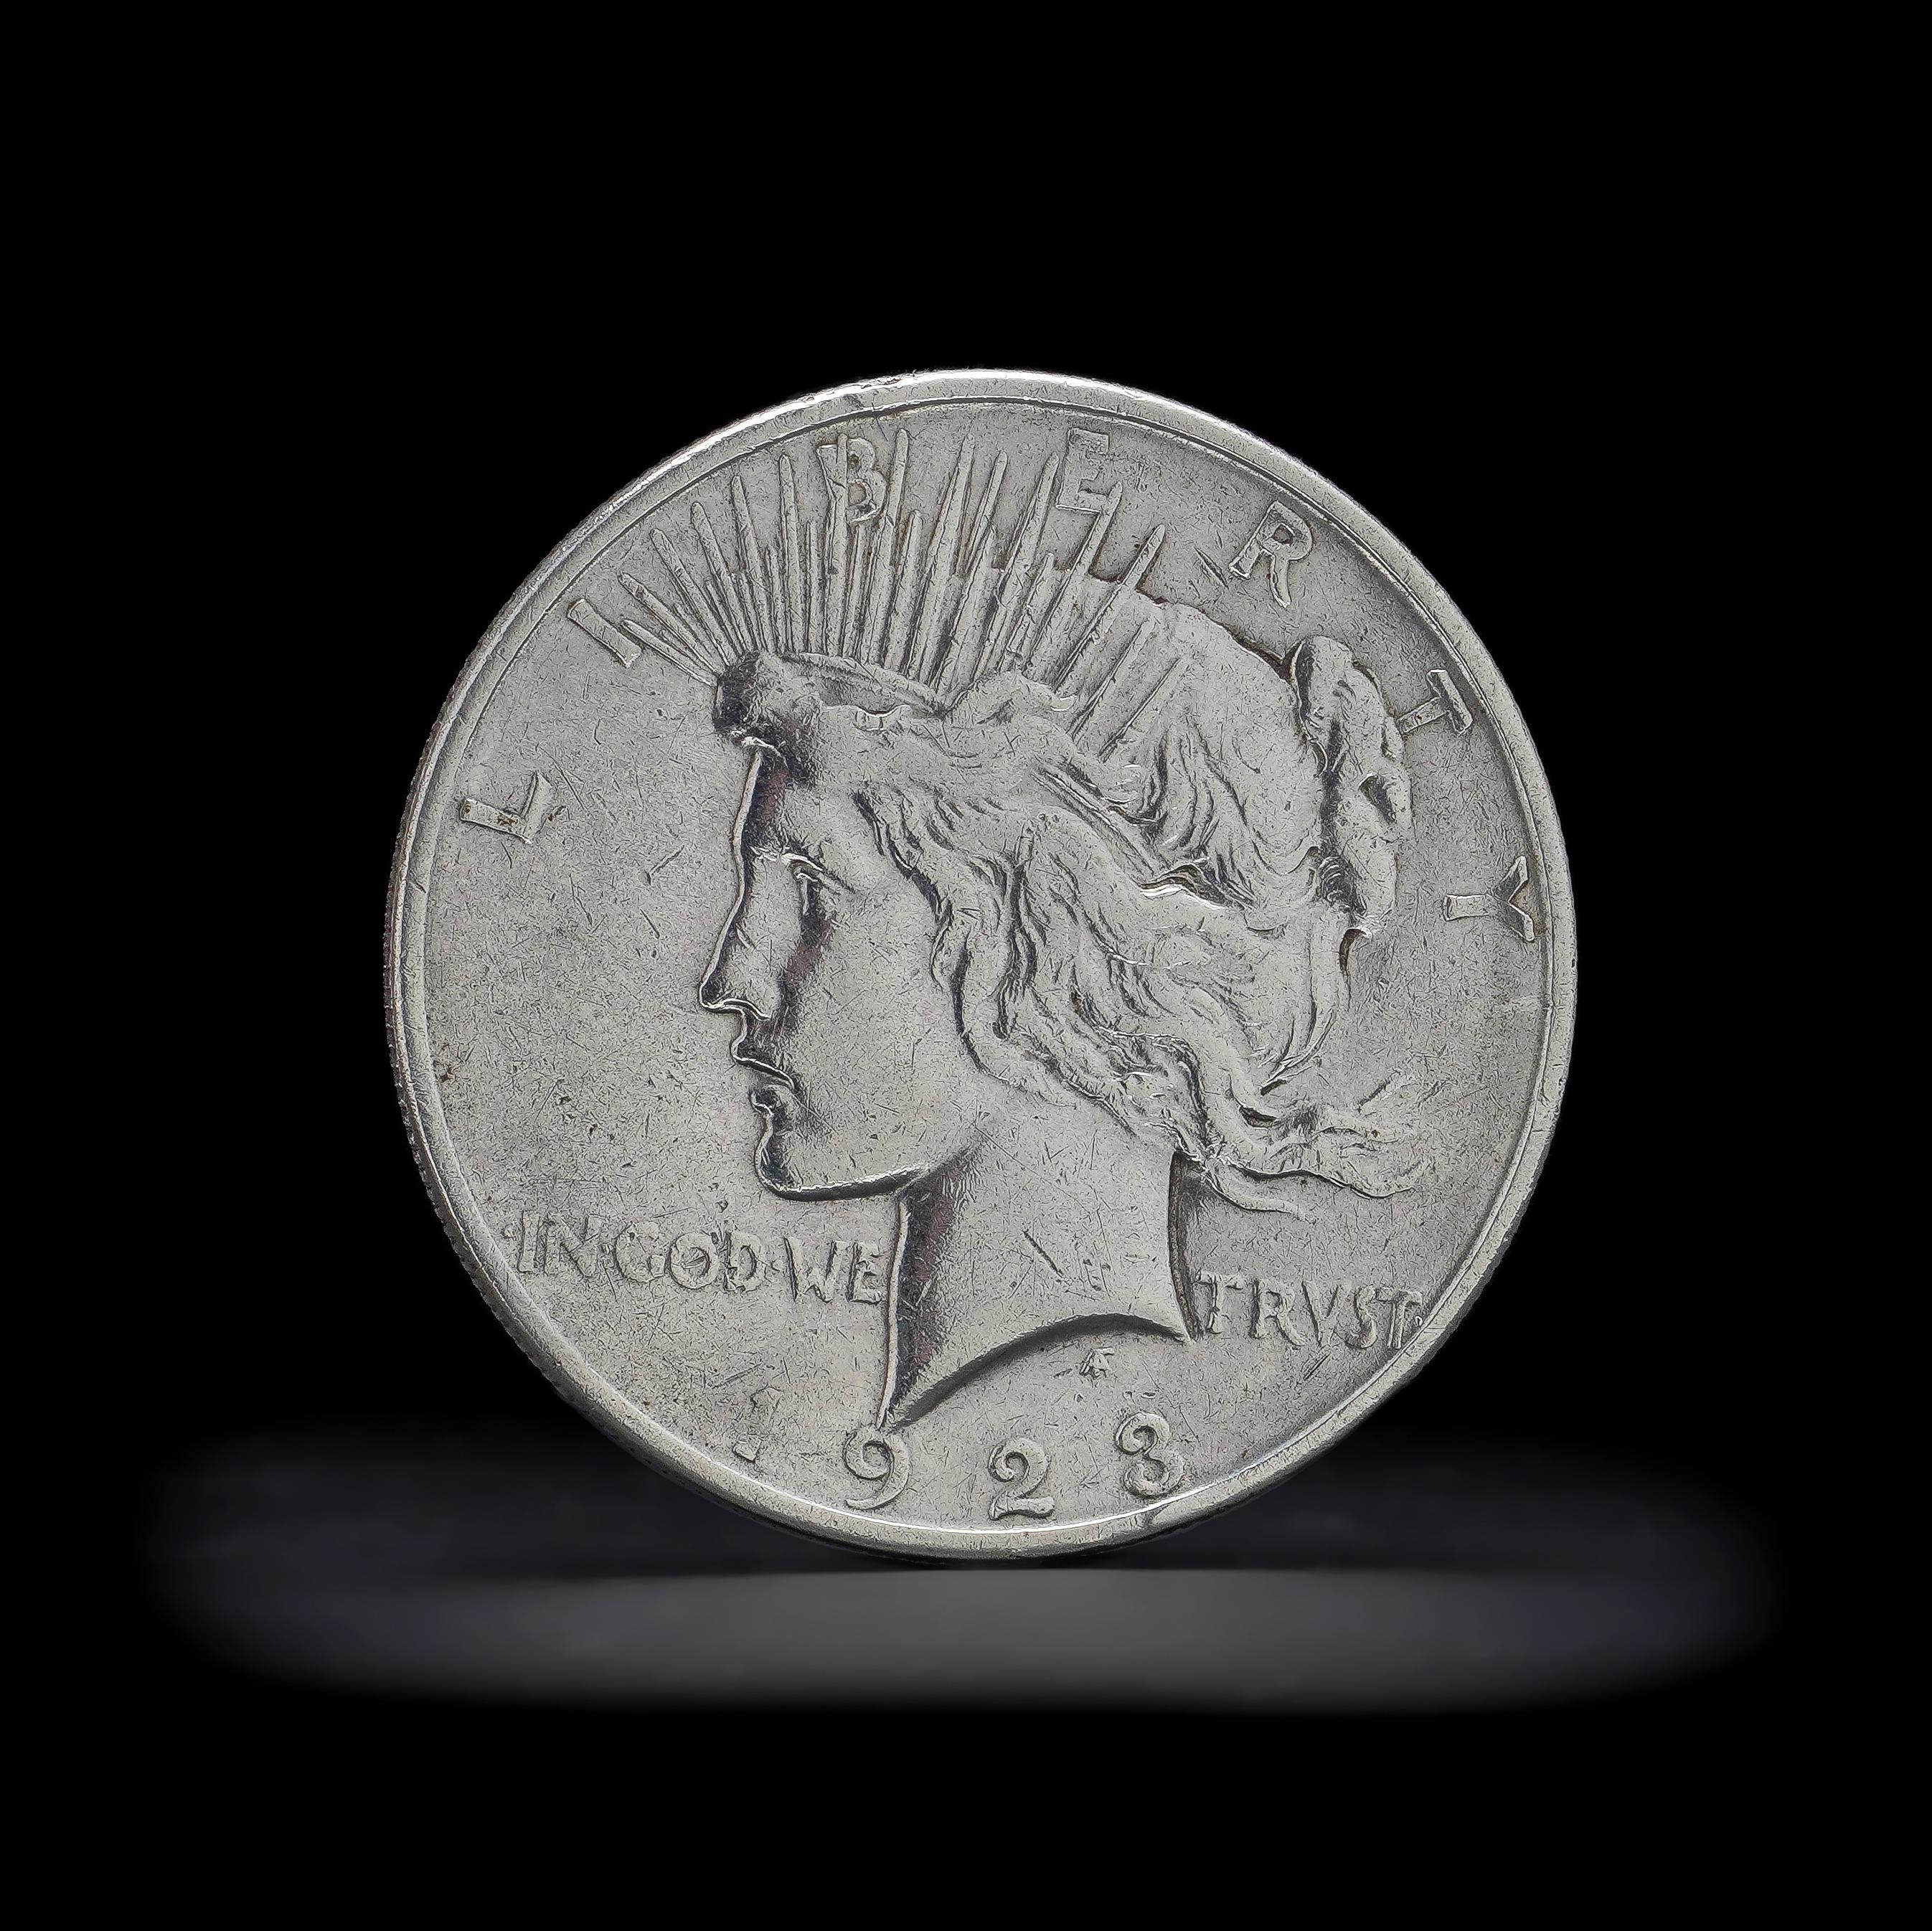 1923 silver dollar value